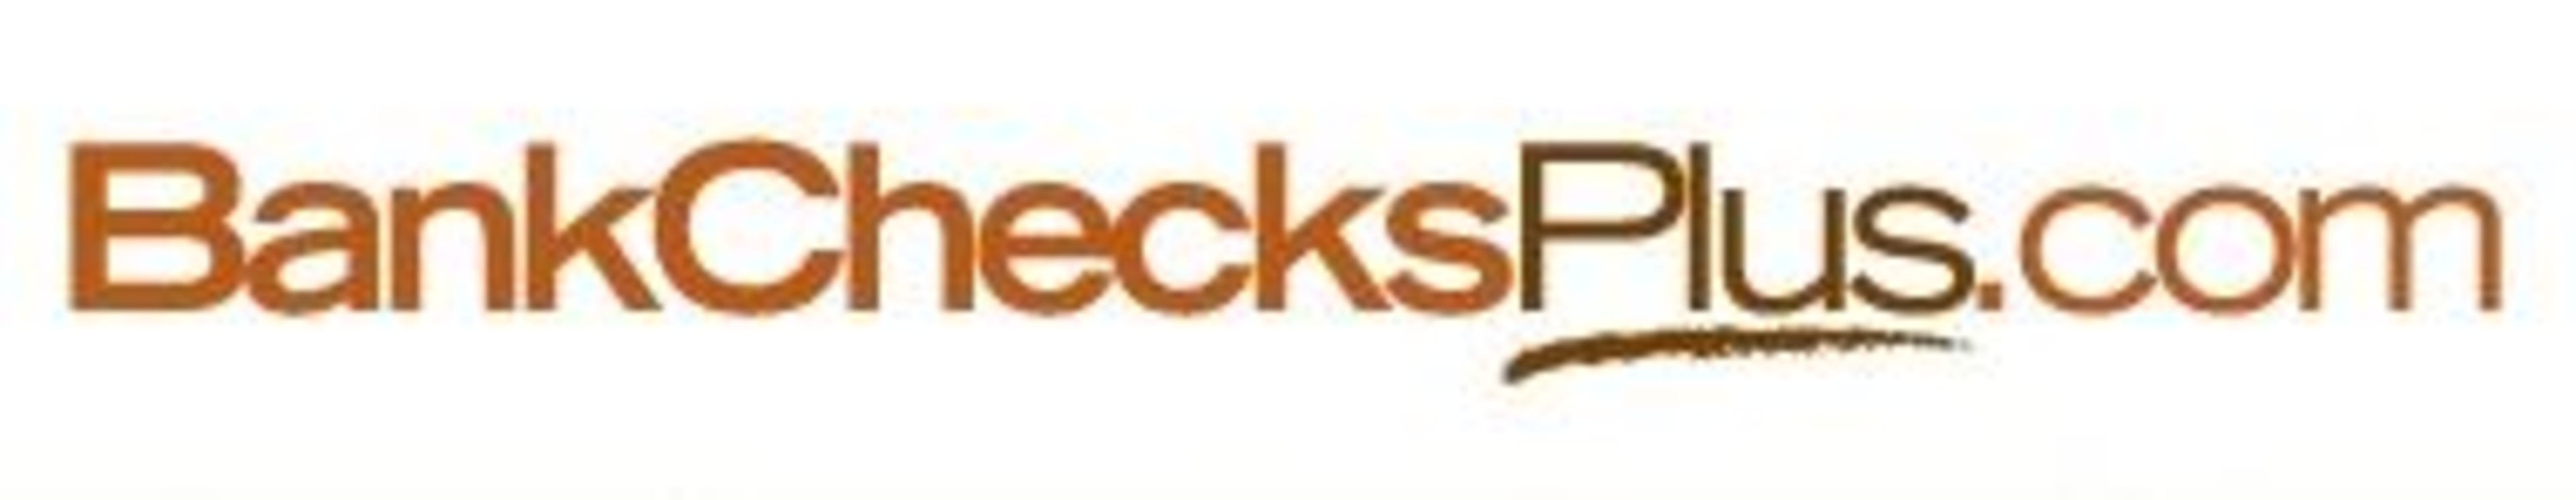 BankChecksPlus Code